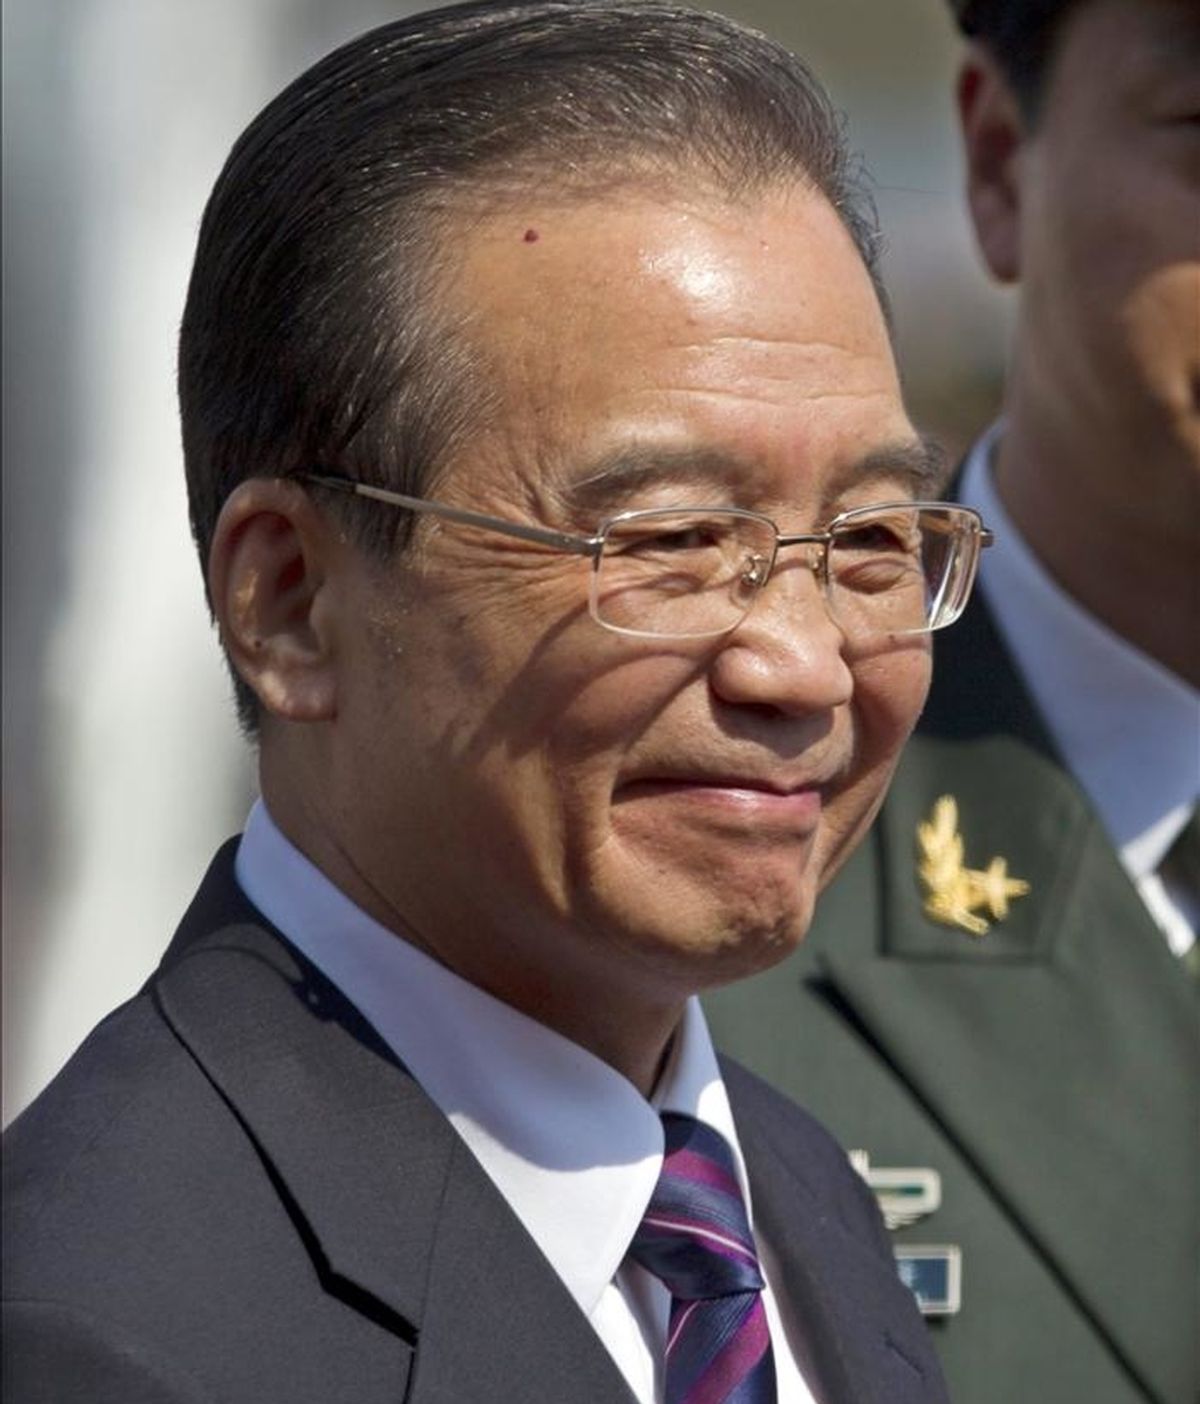 El primer ministro chino, Wen Jiabao. EFE/Archivo